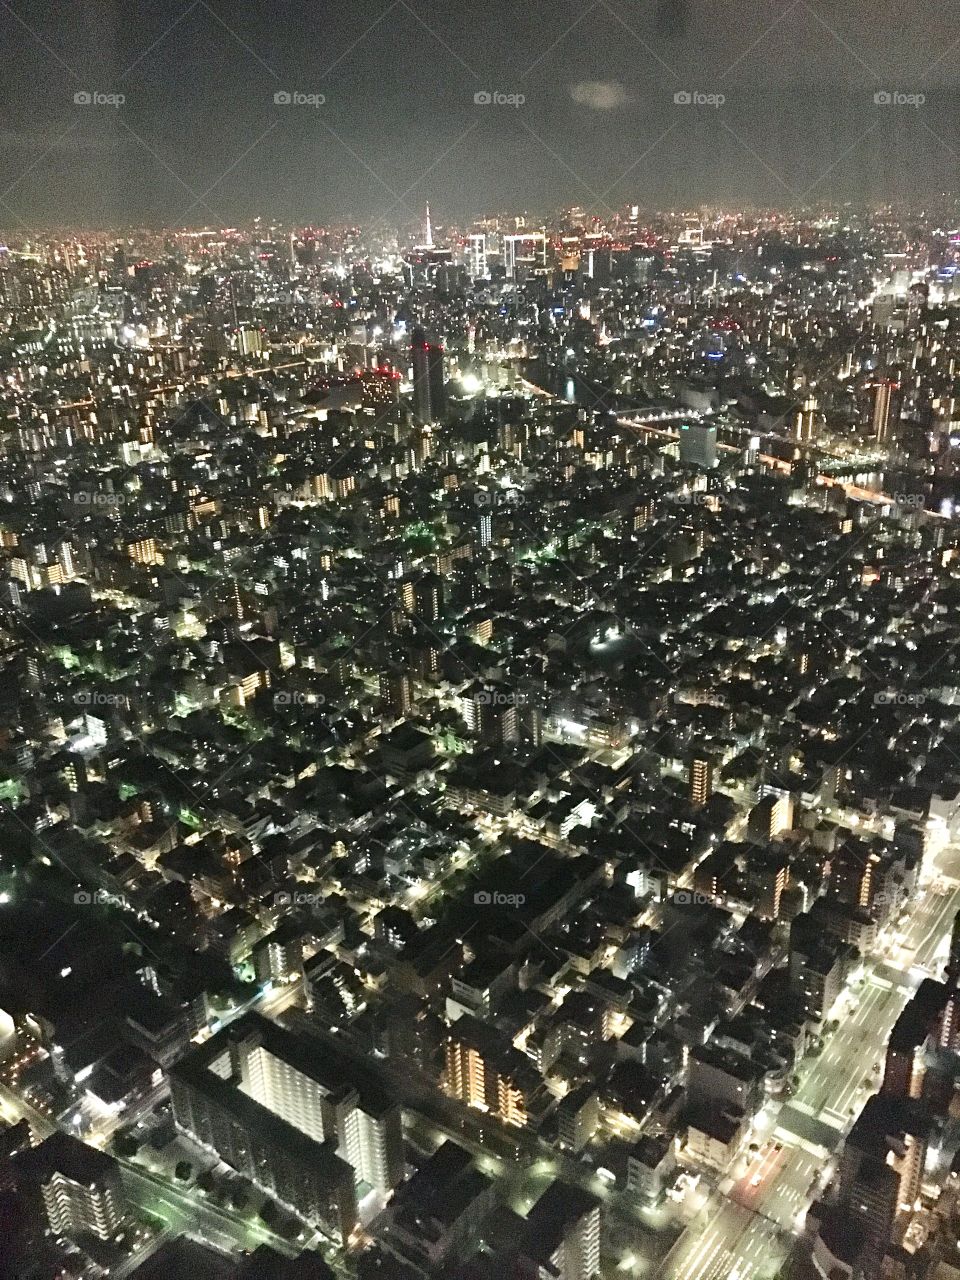 Tokyo - the concrete jungle